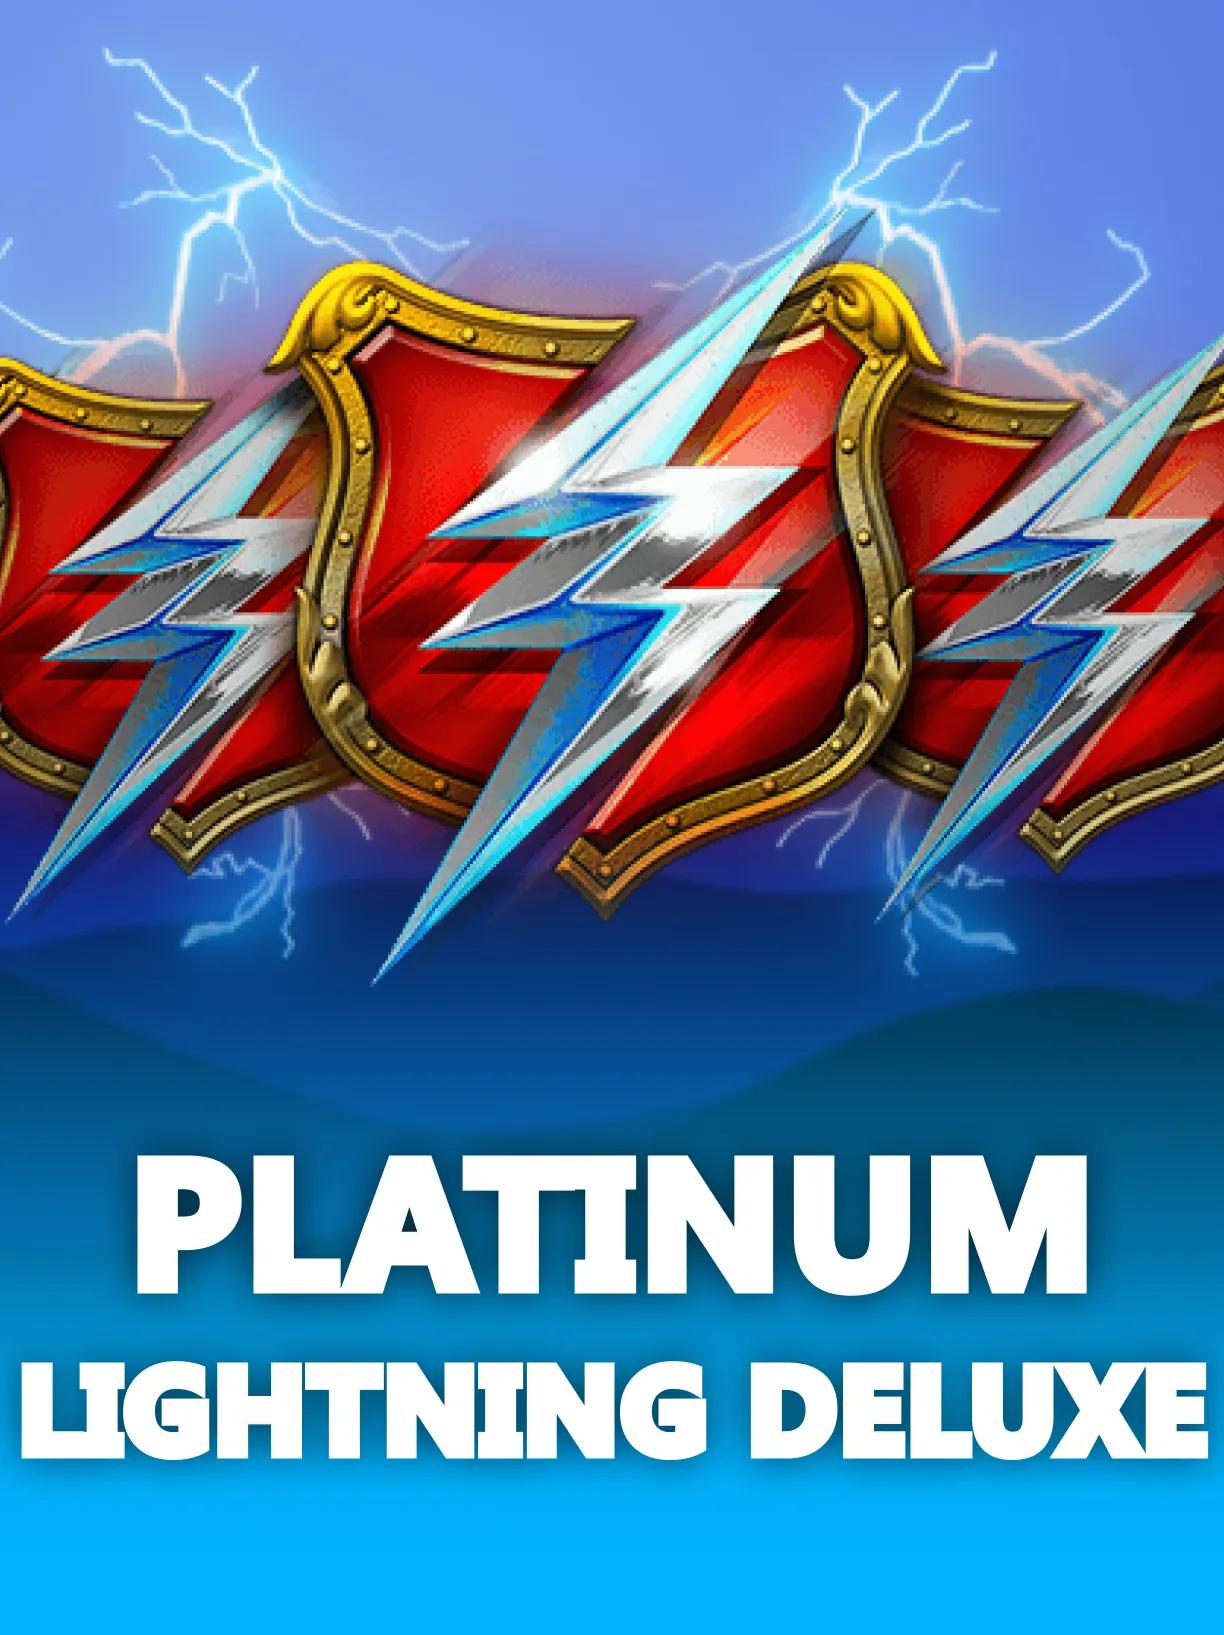 Platinum_Lightning_Deluxe_square.webp